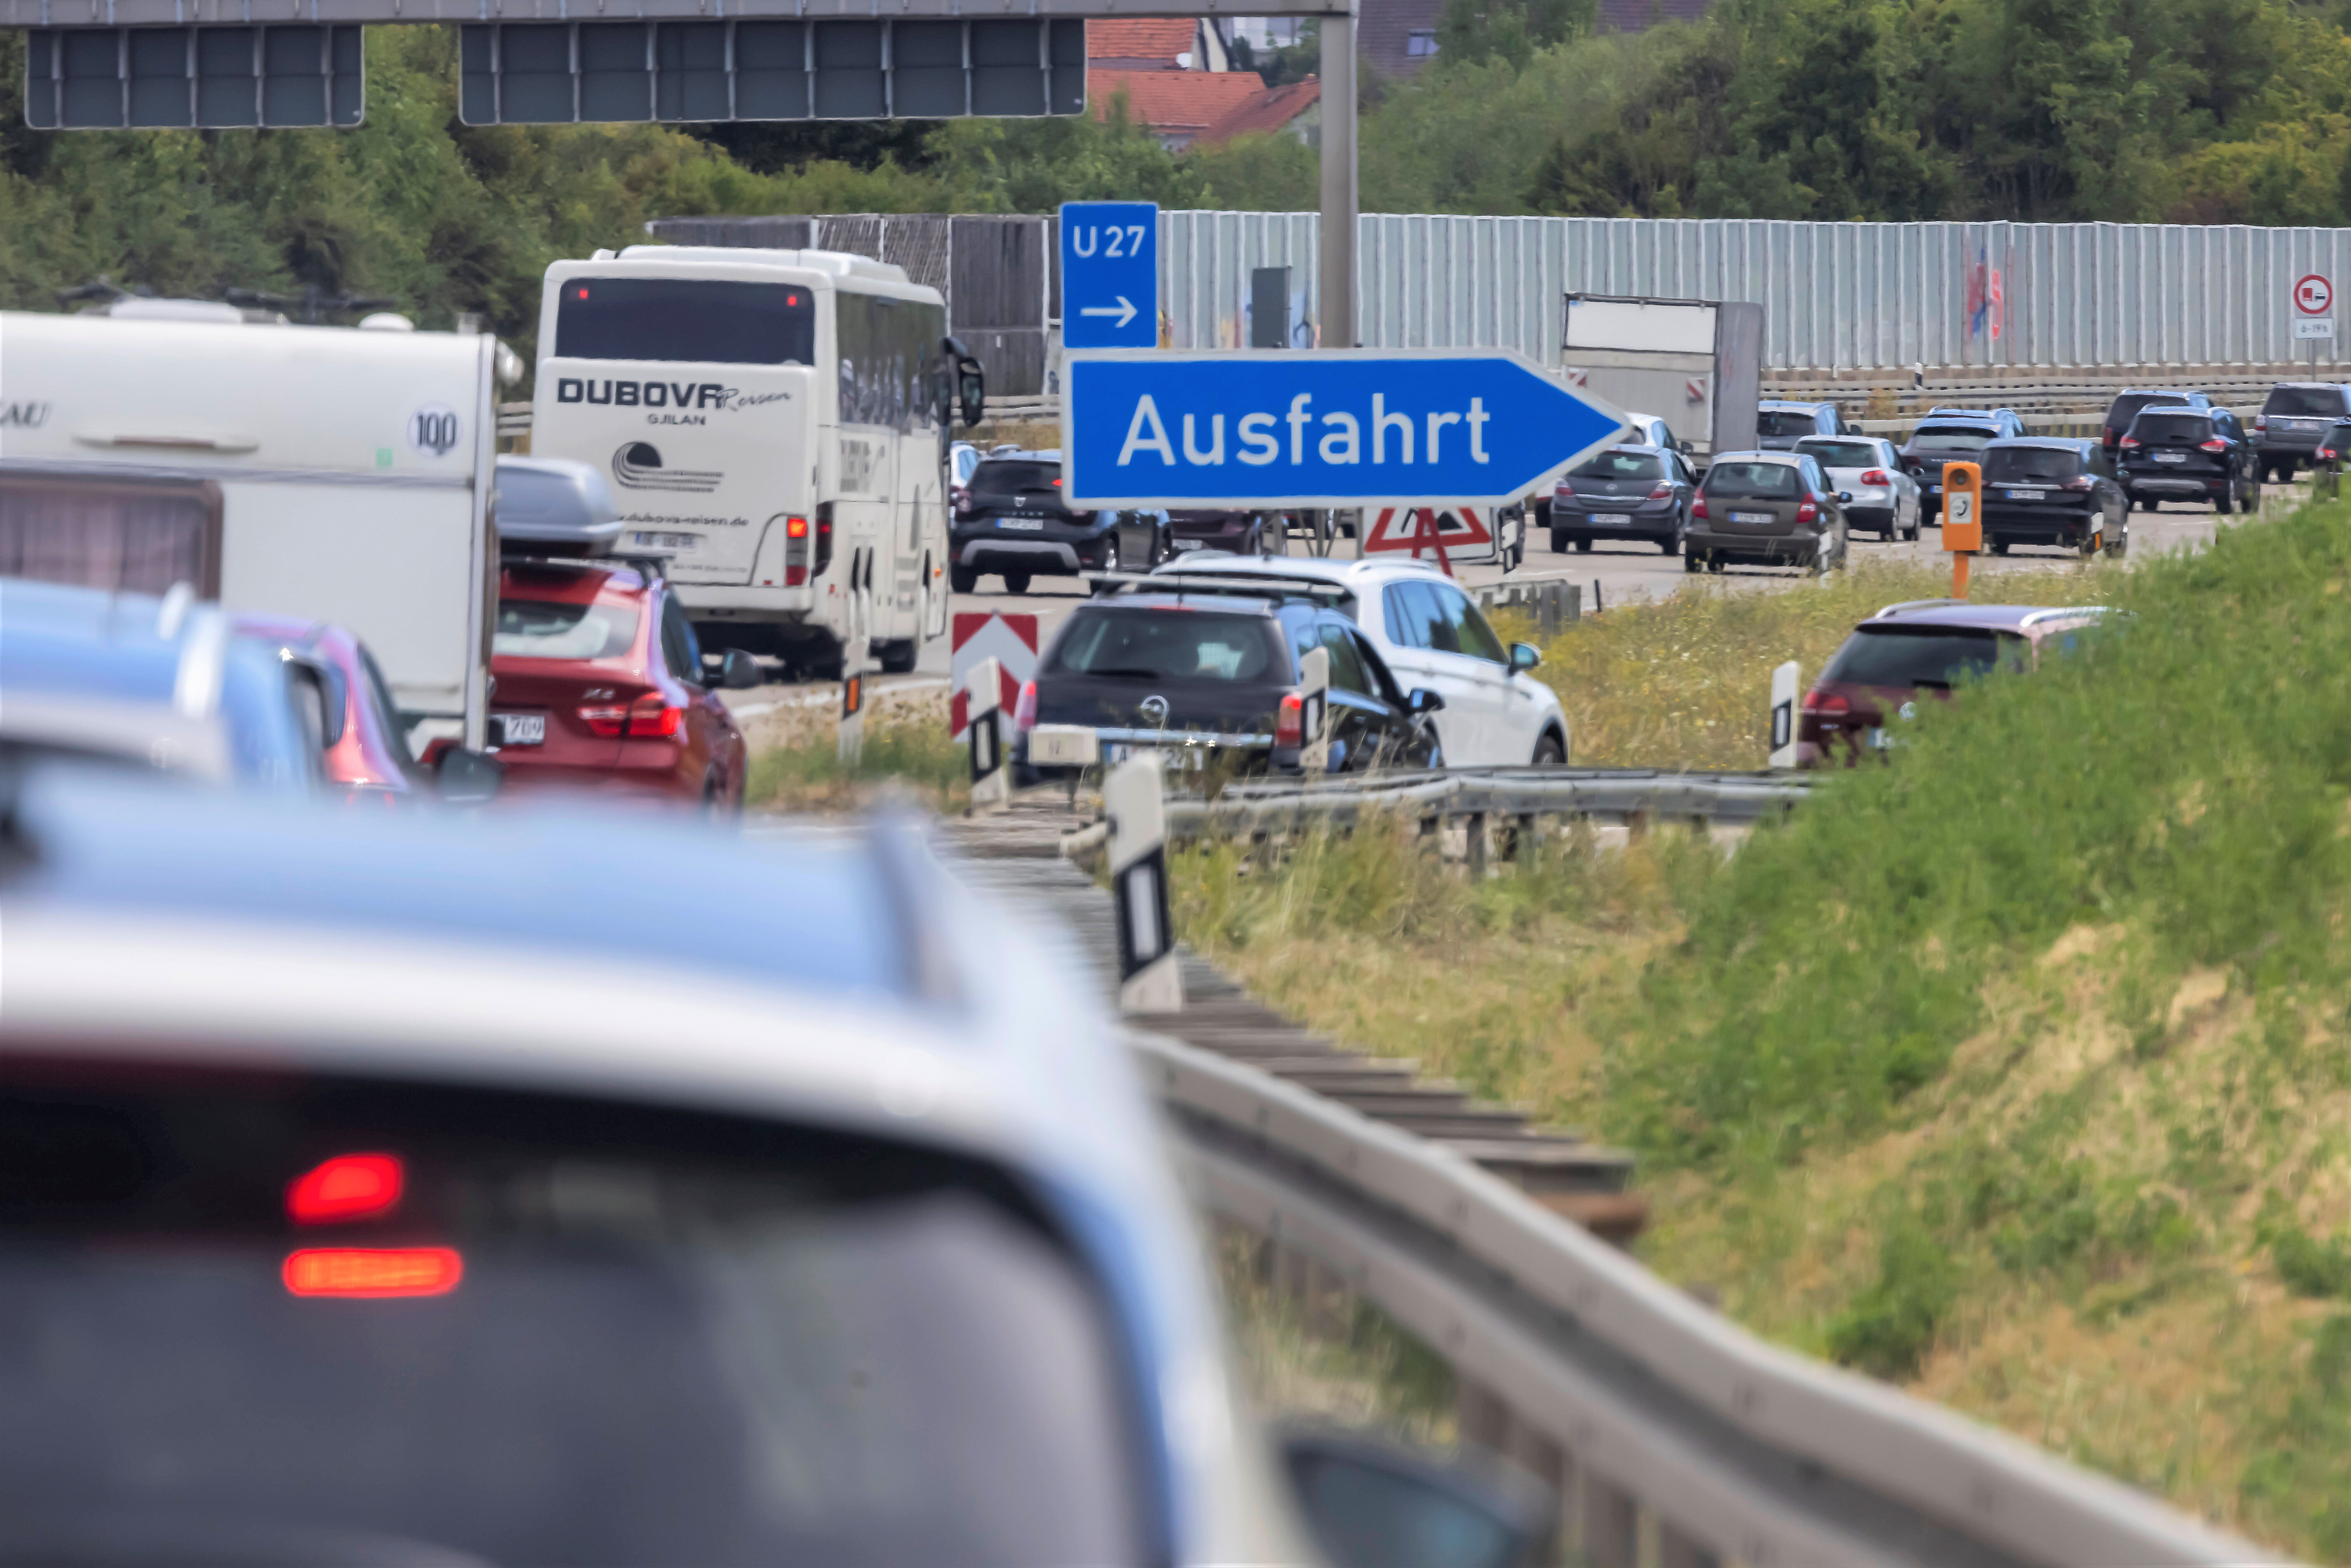 Vollsperrung! Schwerer Unfall auf der Autobahn - Wohnmobil regelrecht zerfetzt!